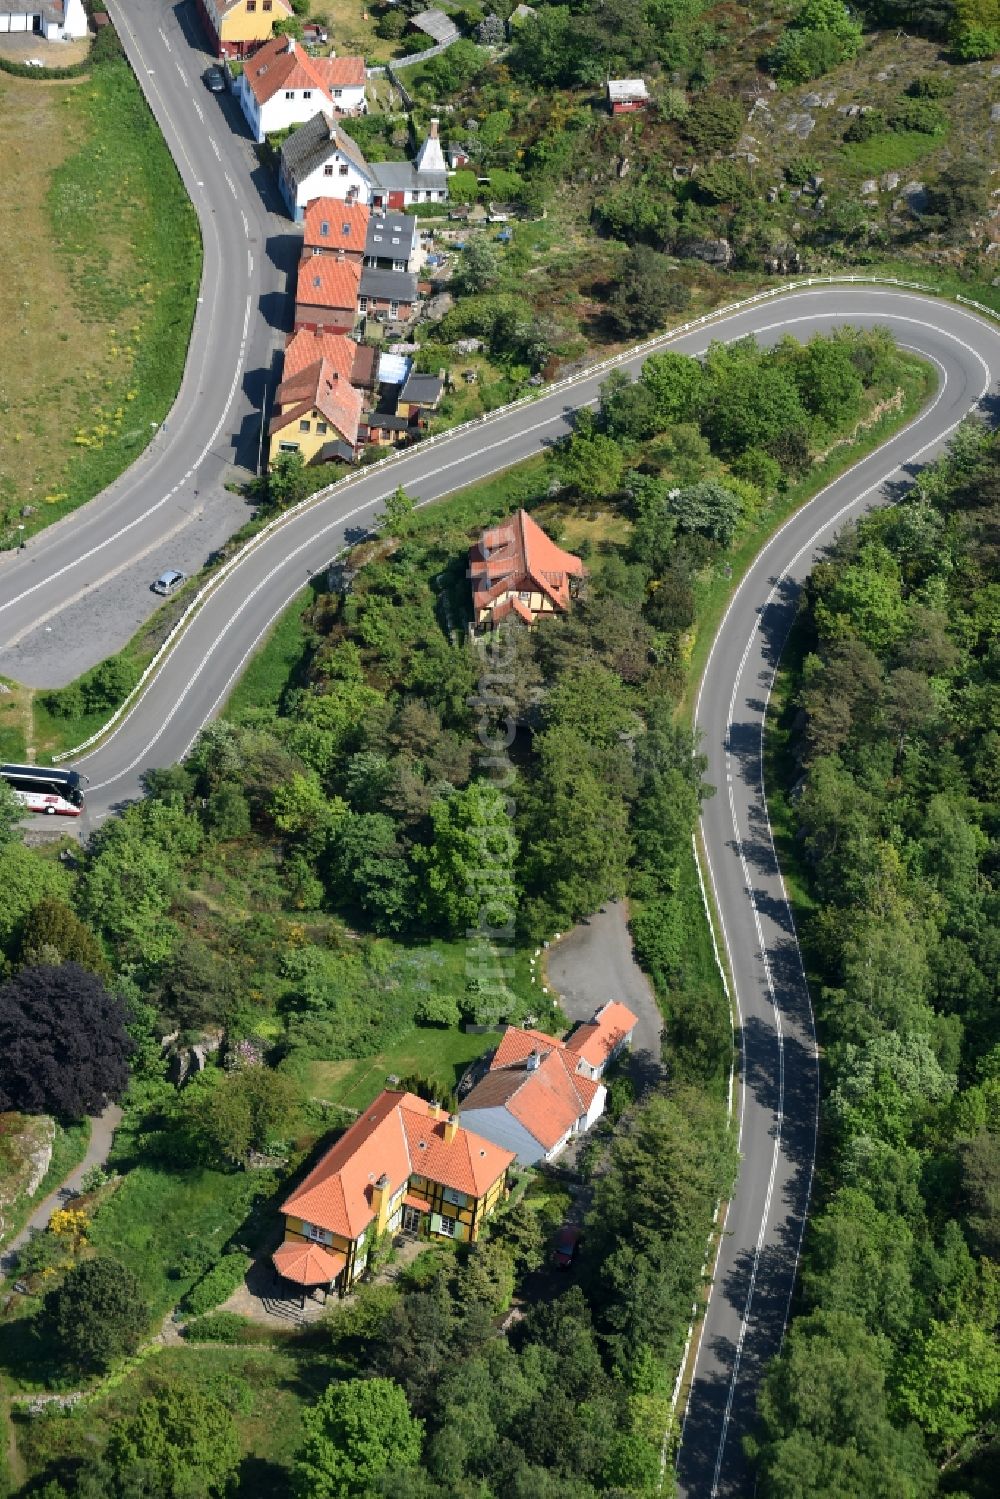 Gudhjem aus der Vogelperspektive: Serpentinenförmiger Kurvenverlauf der Straßenführung Norresand in Gudhjem in Region Hovedstaden, Dänemark